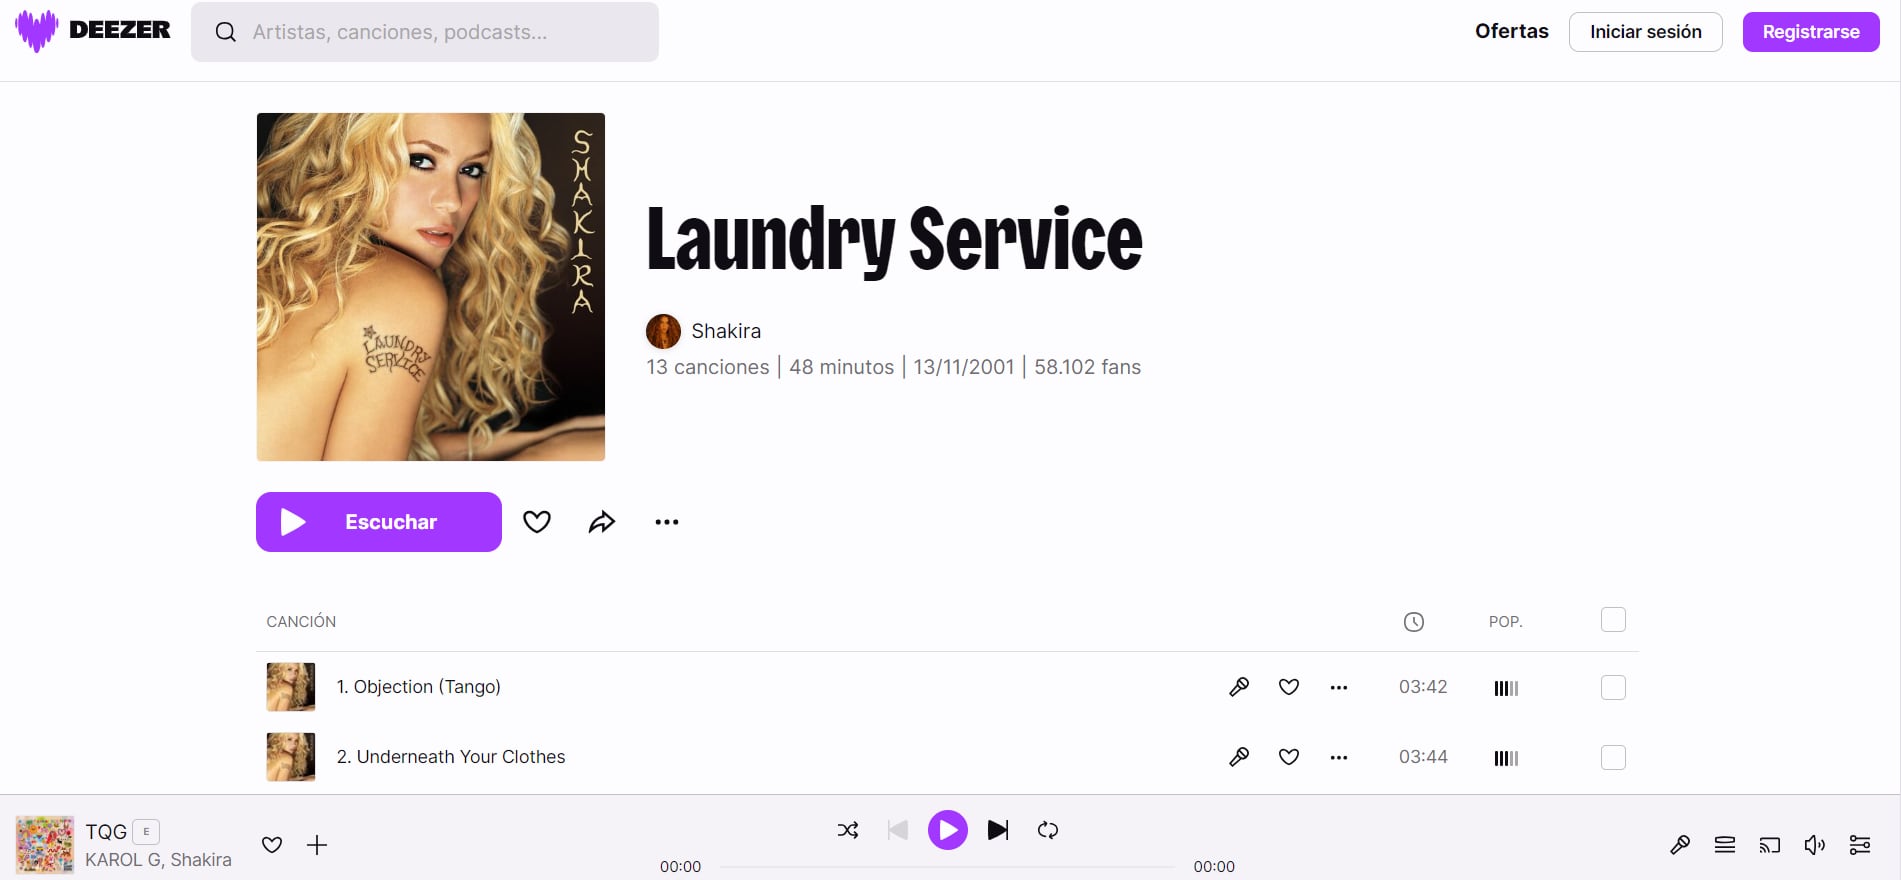 Laundry Service es un de sus últimos álbumes de estudio. (Deezer)